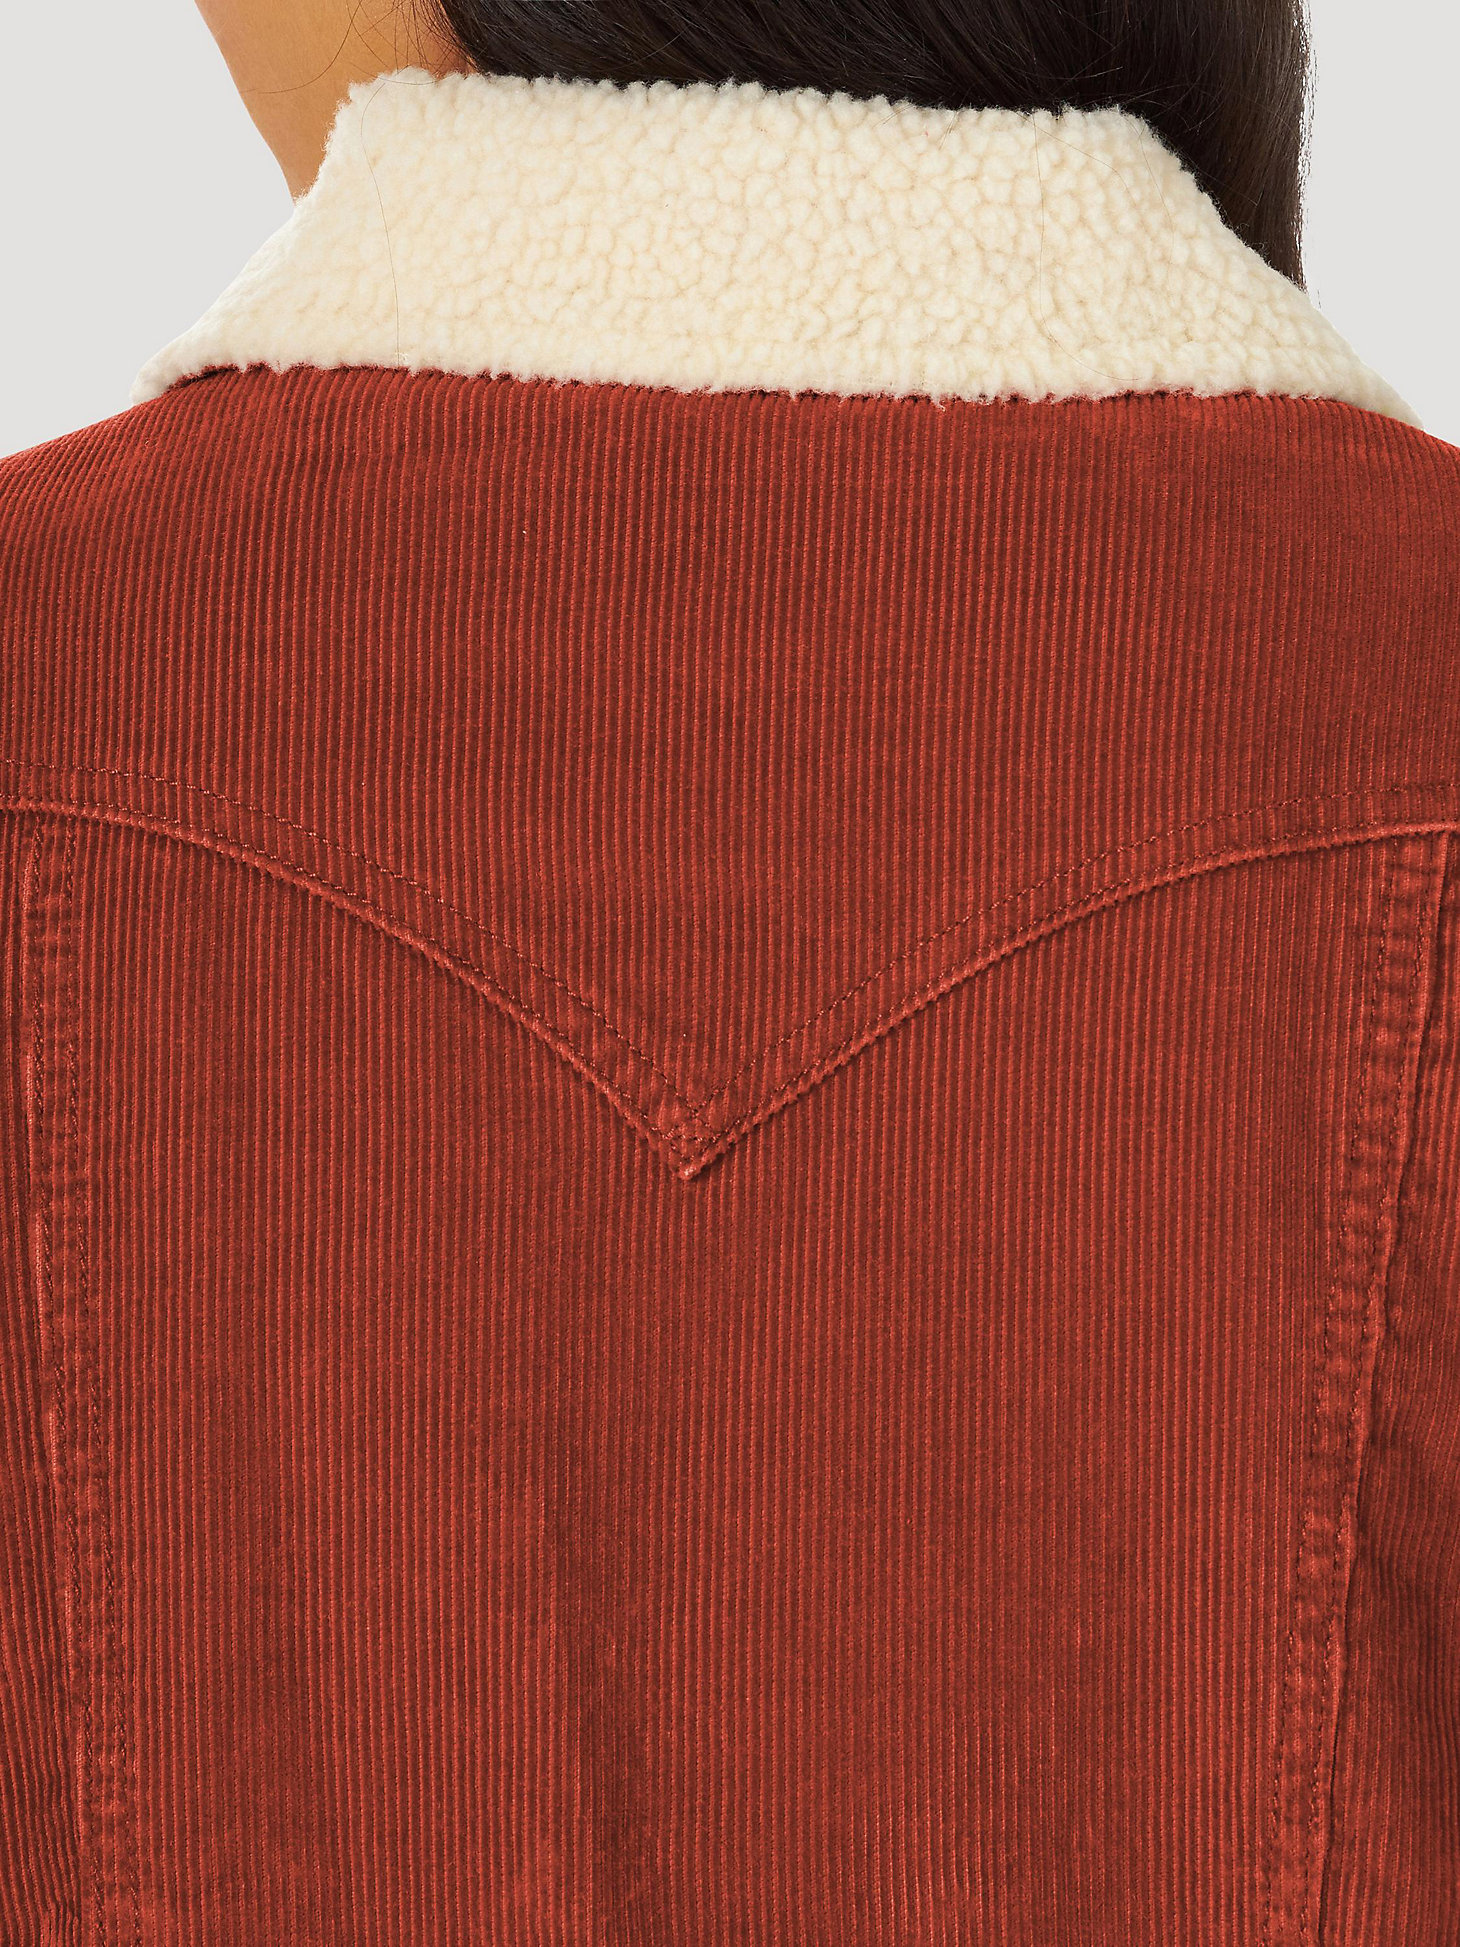 Women's Wrangler® Sherpa Lined Barn Jacket in rust alternative view 6